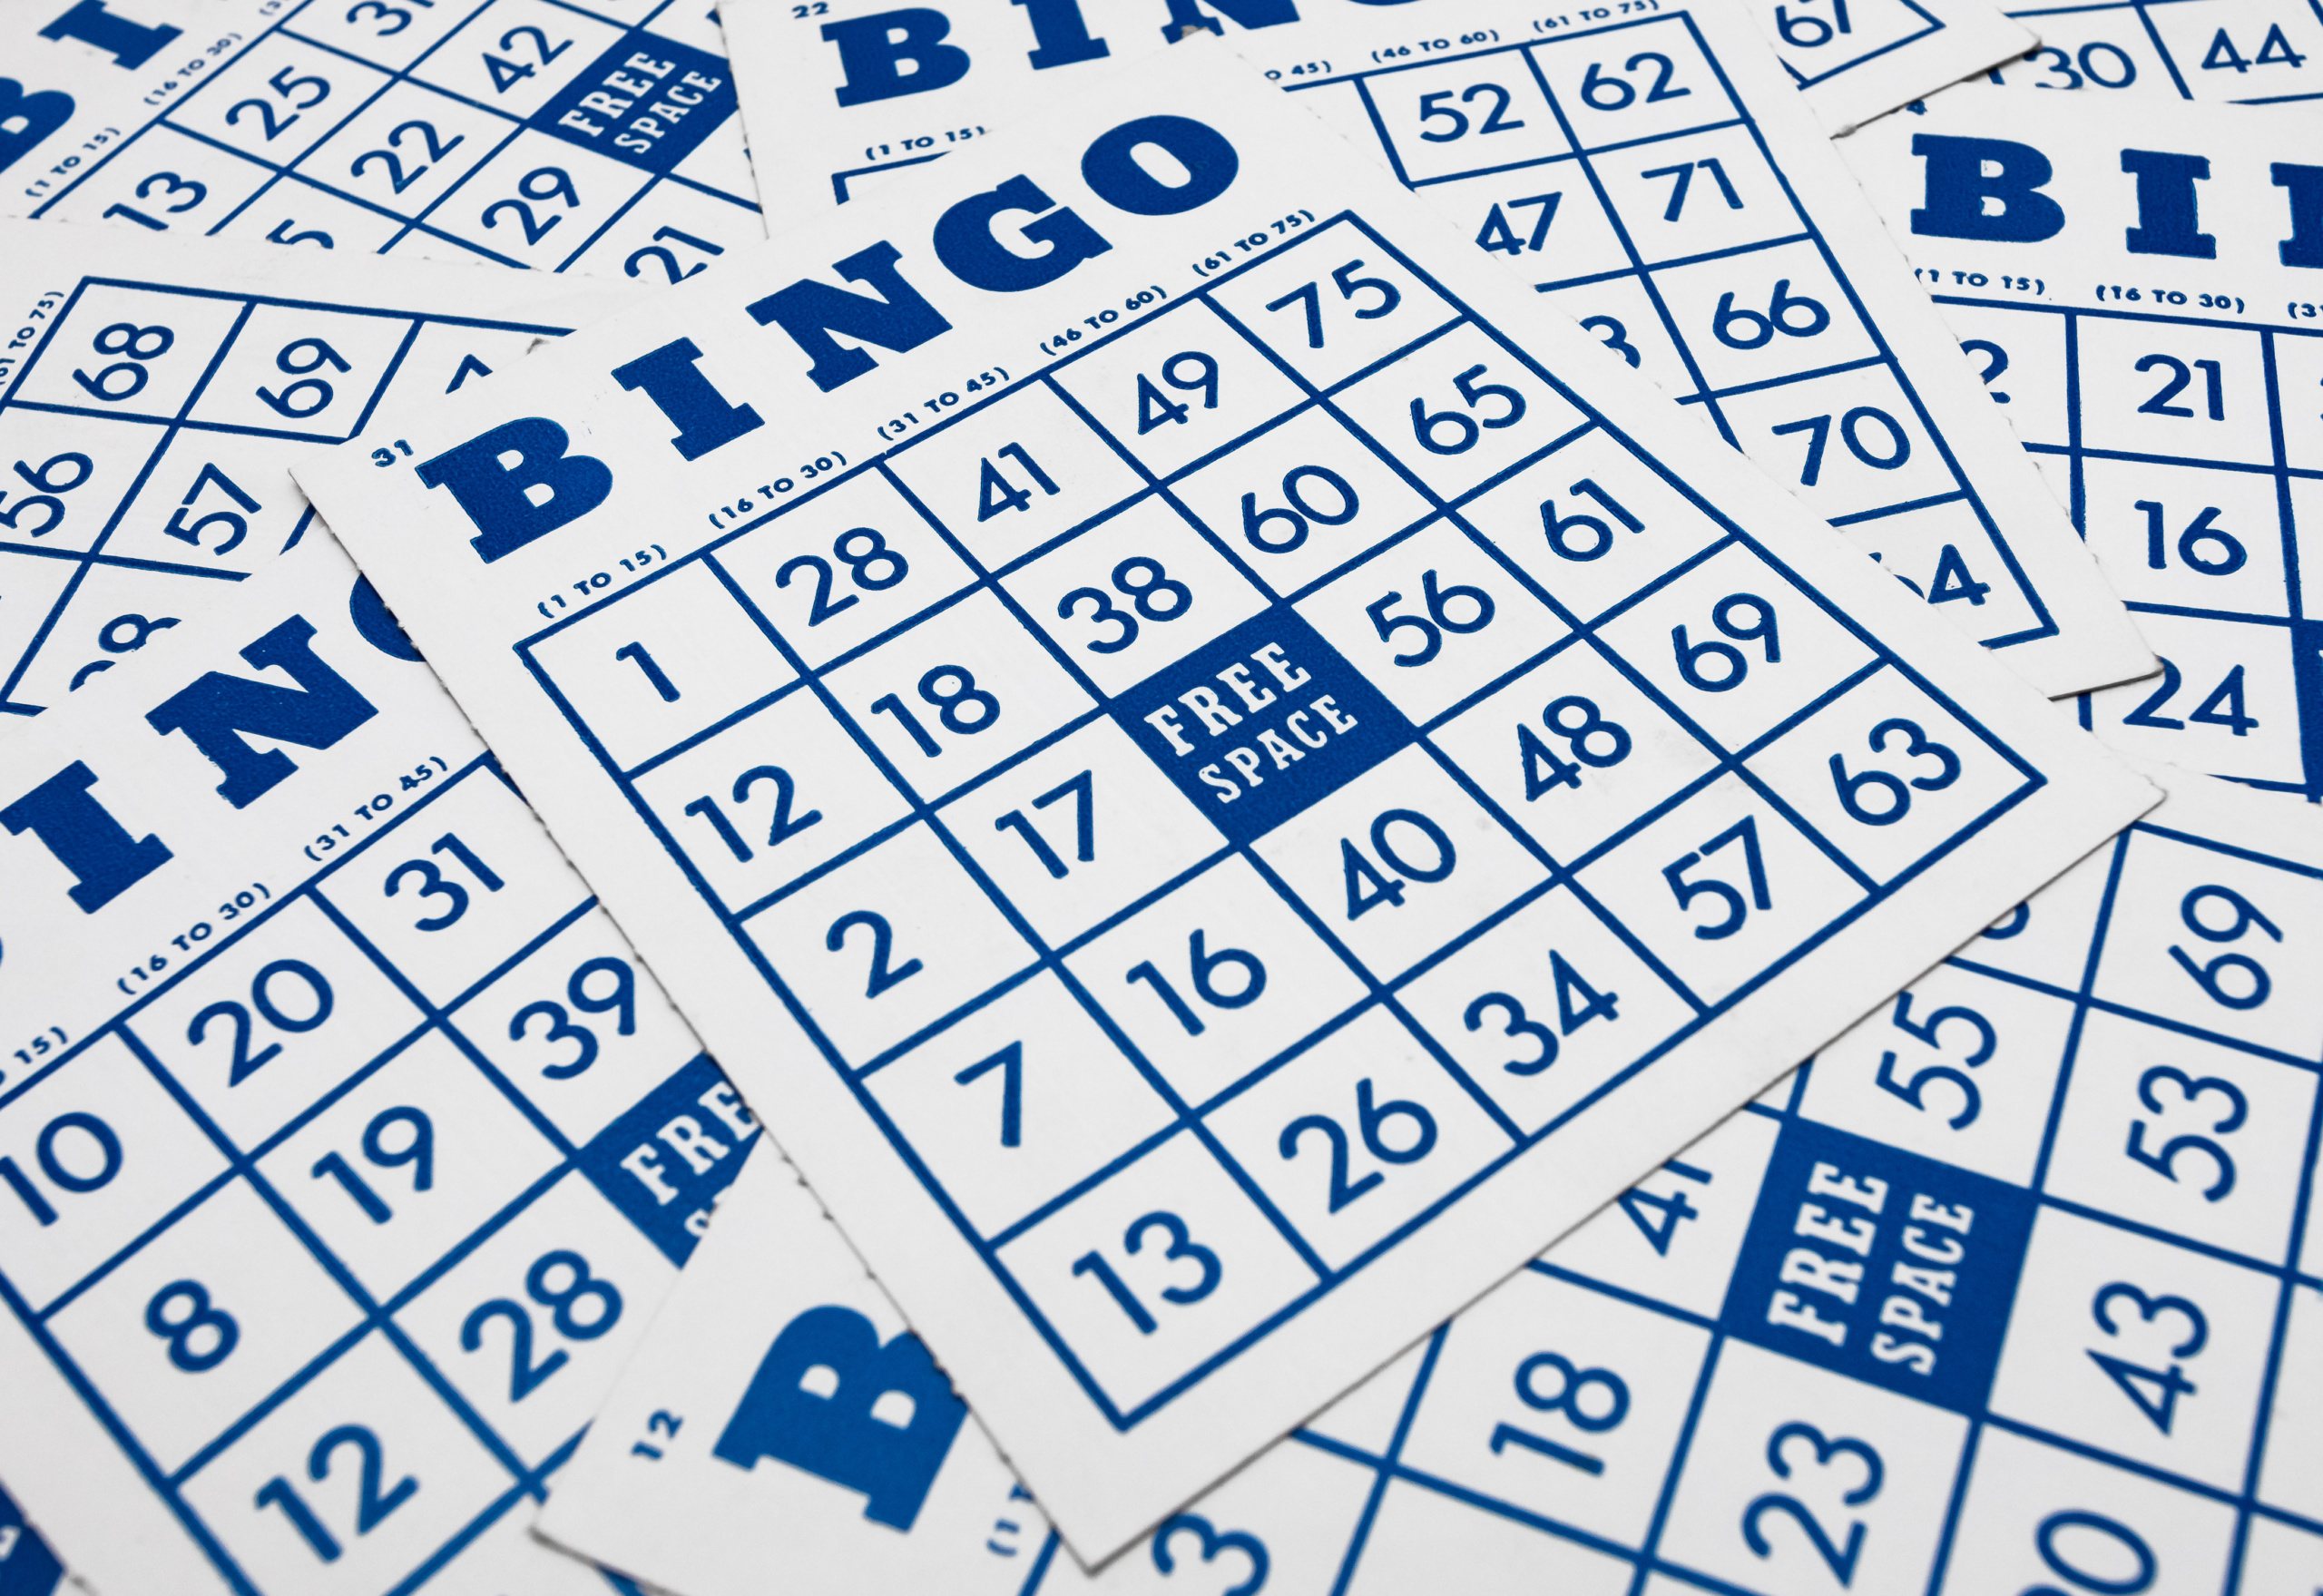 Ludijogos - 󾔗󾔗 Semana do Bingo! 󾔗󾔗 󾔐󾔐 Sorteamos 150M 󾔐󾔐 Quanto mais  você jogar, mais chances de ganhar! + Informações nas Novidades. Jogar  agora 󾮜